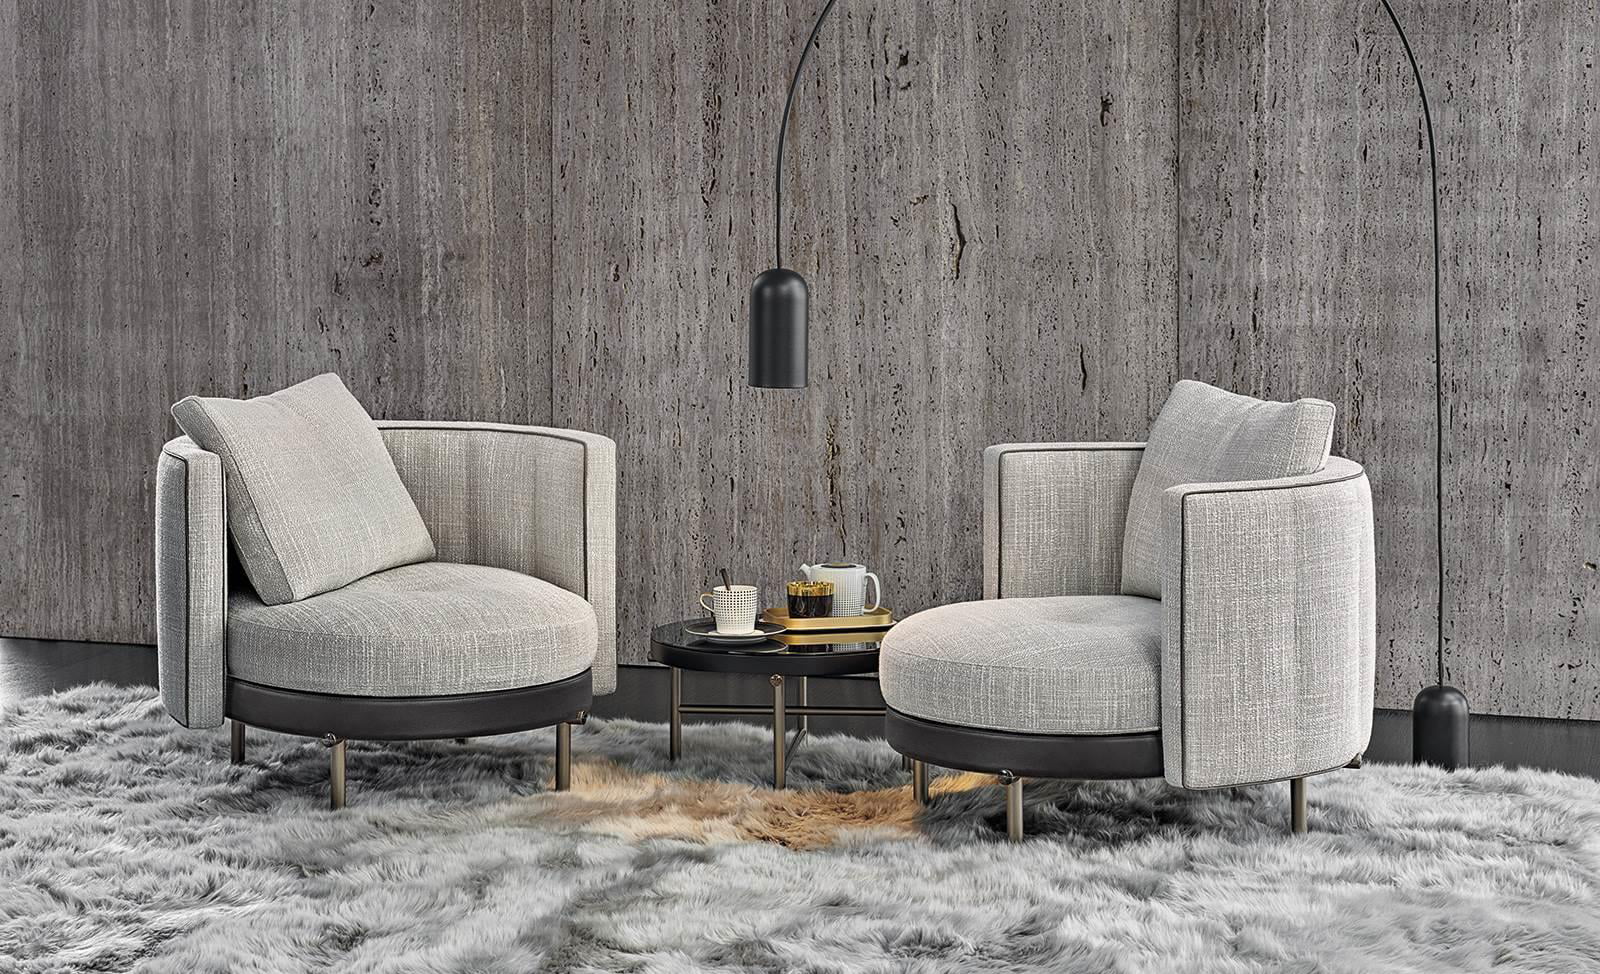 Minotti Torii design fauteuils due in lichte stof met donker lederen onderkant. geplaatst op vloerkleed